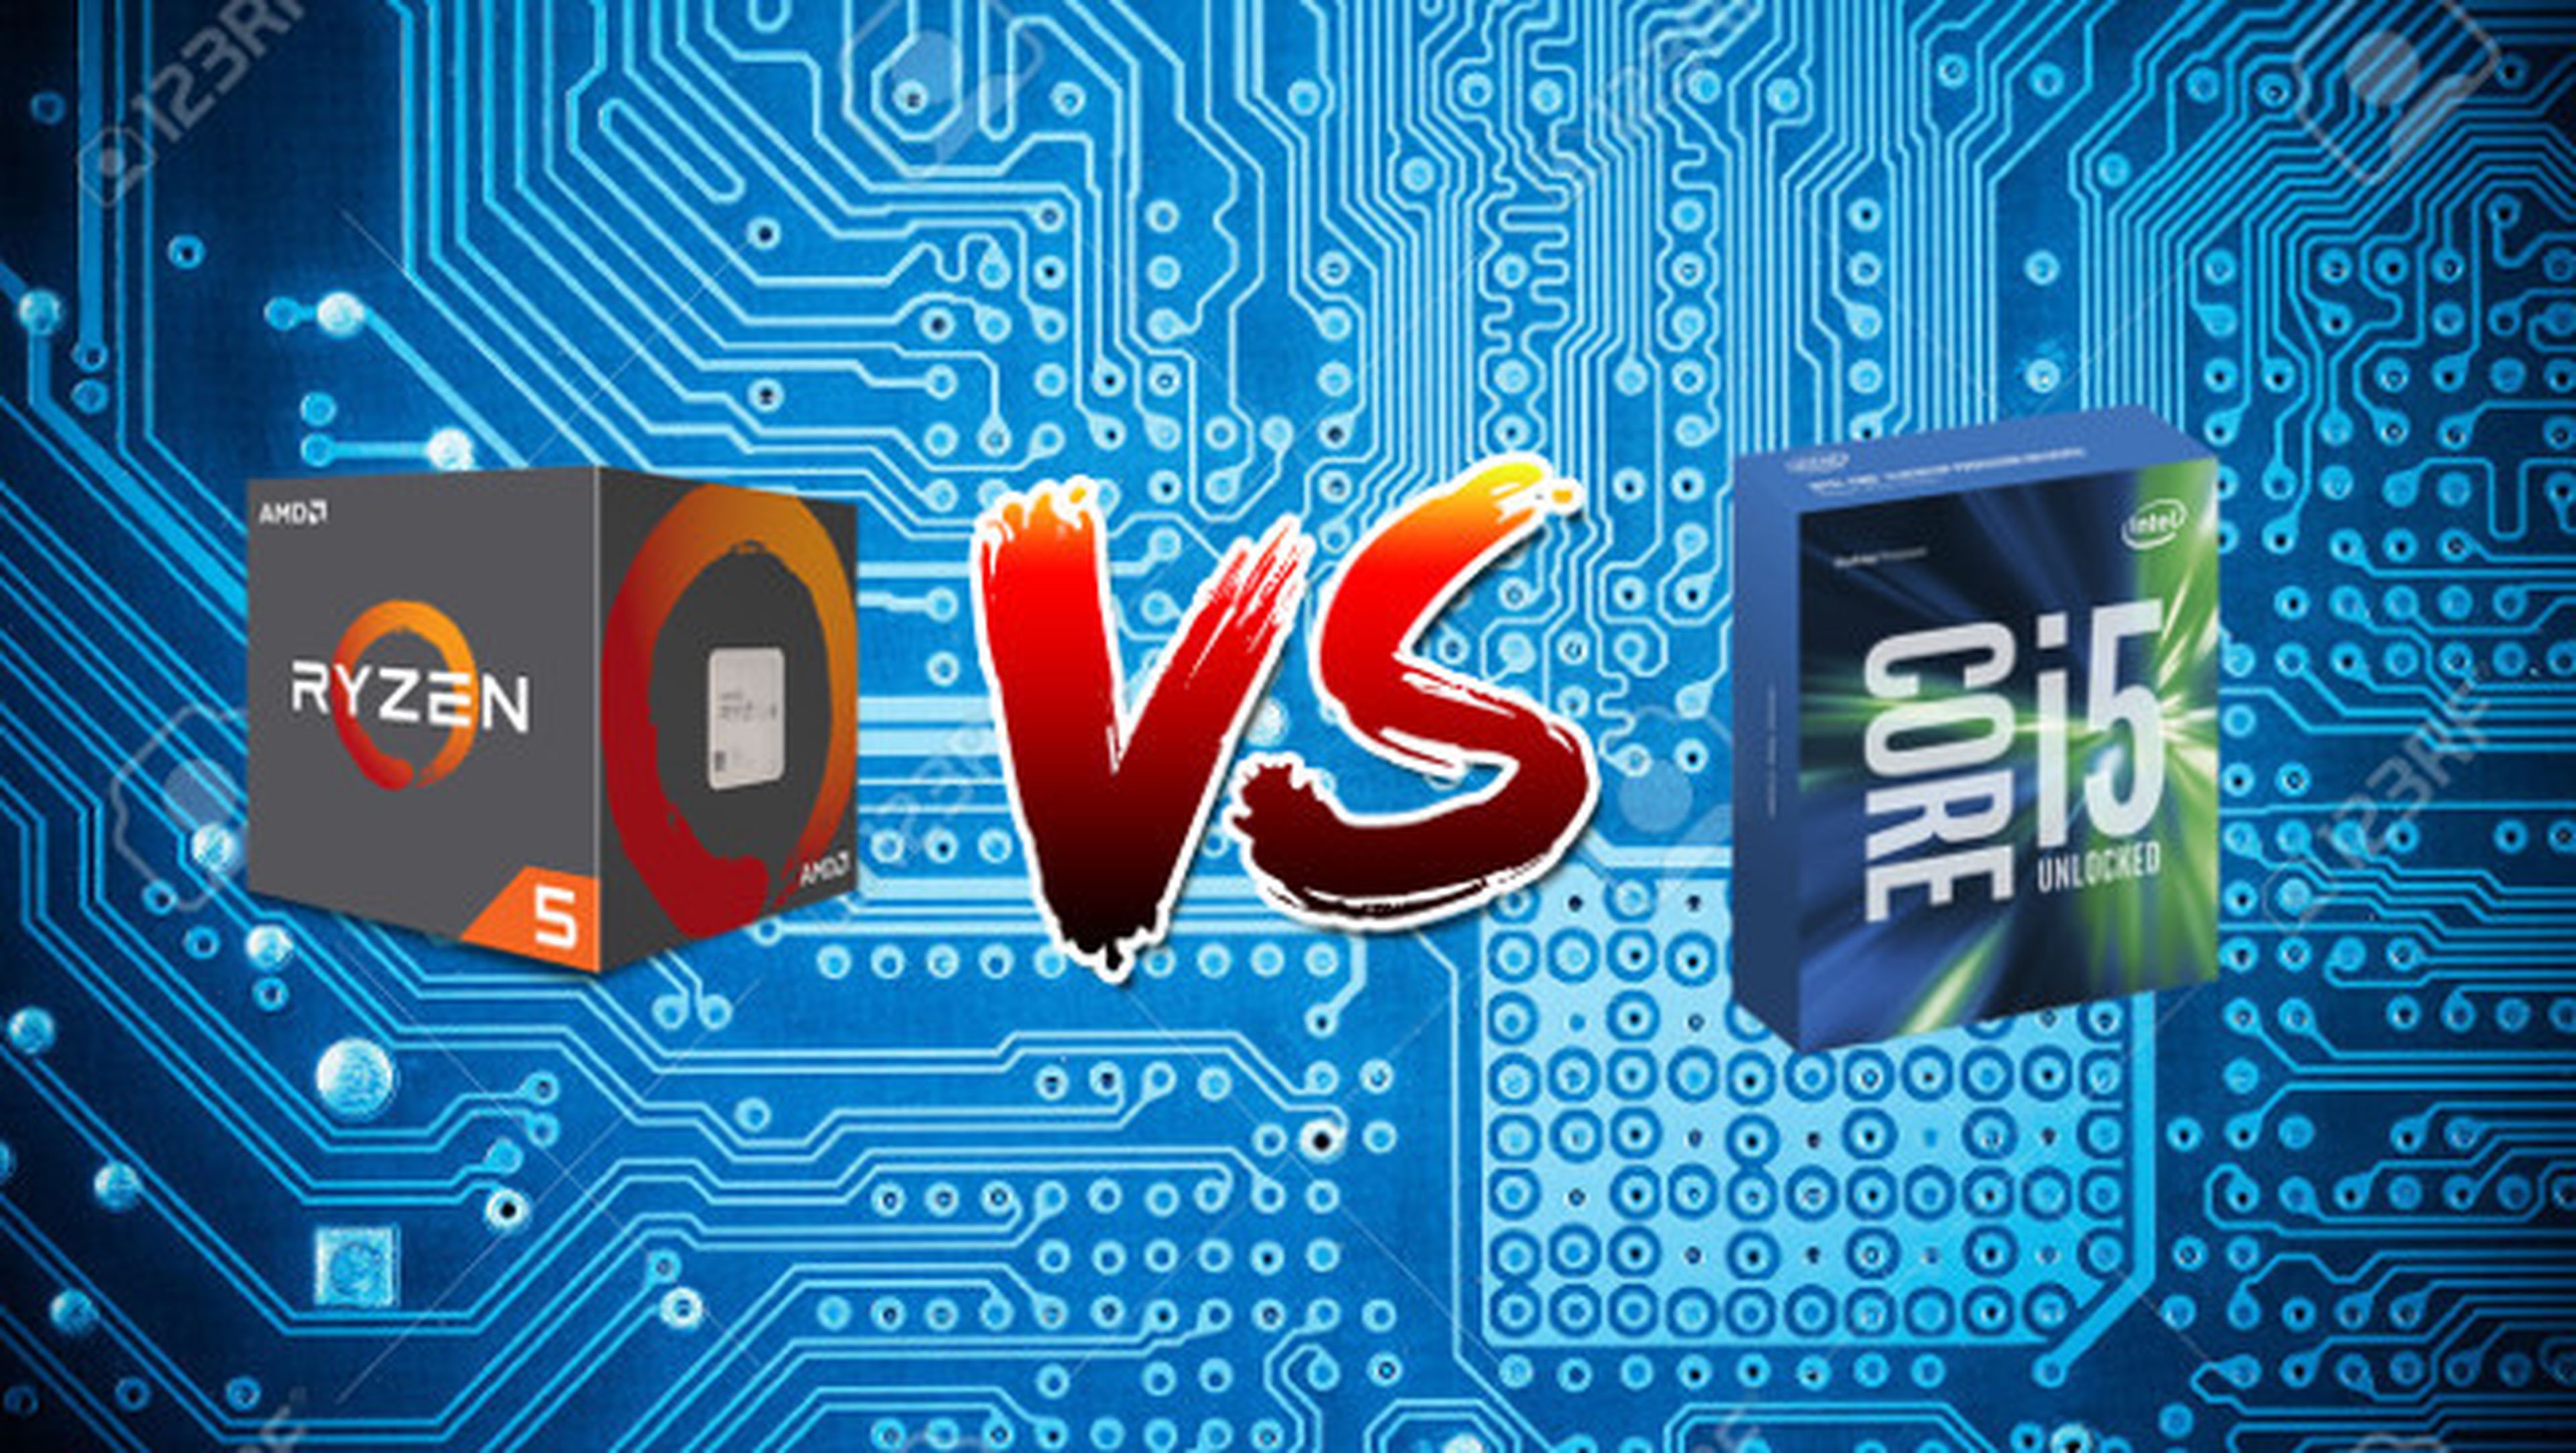 Comparativa de precio para comprobar si es más barato el procesador AMD Ryzen 5 o el Intel Core i5.